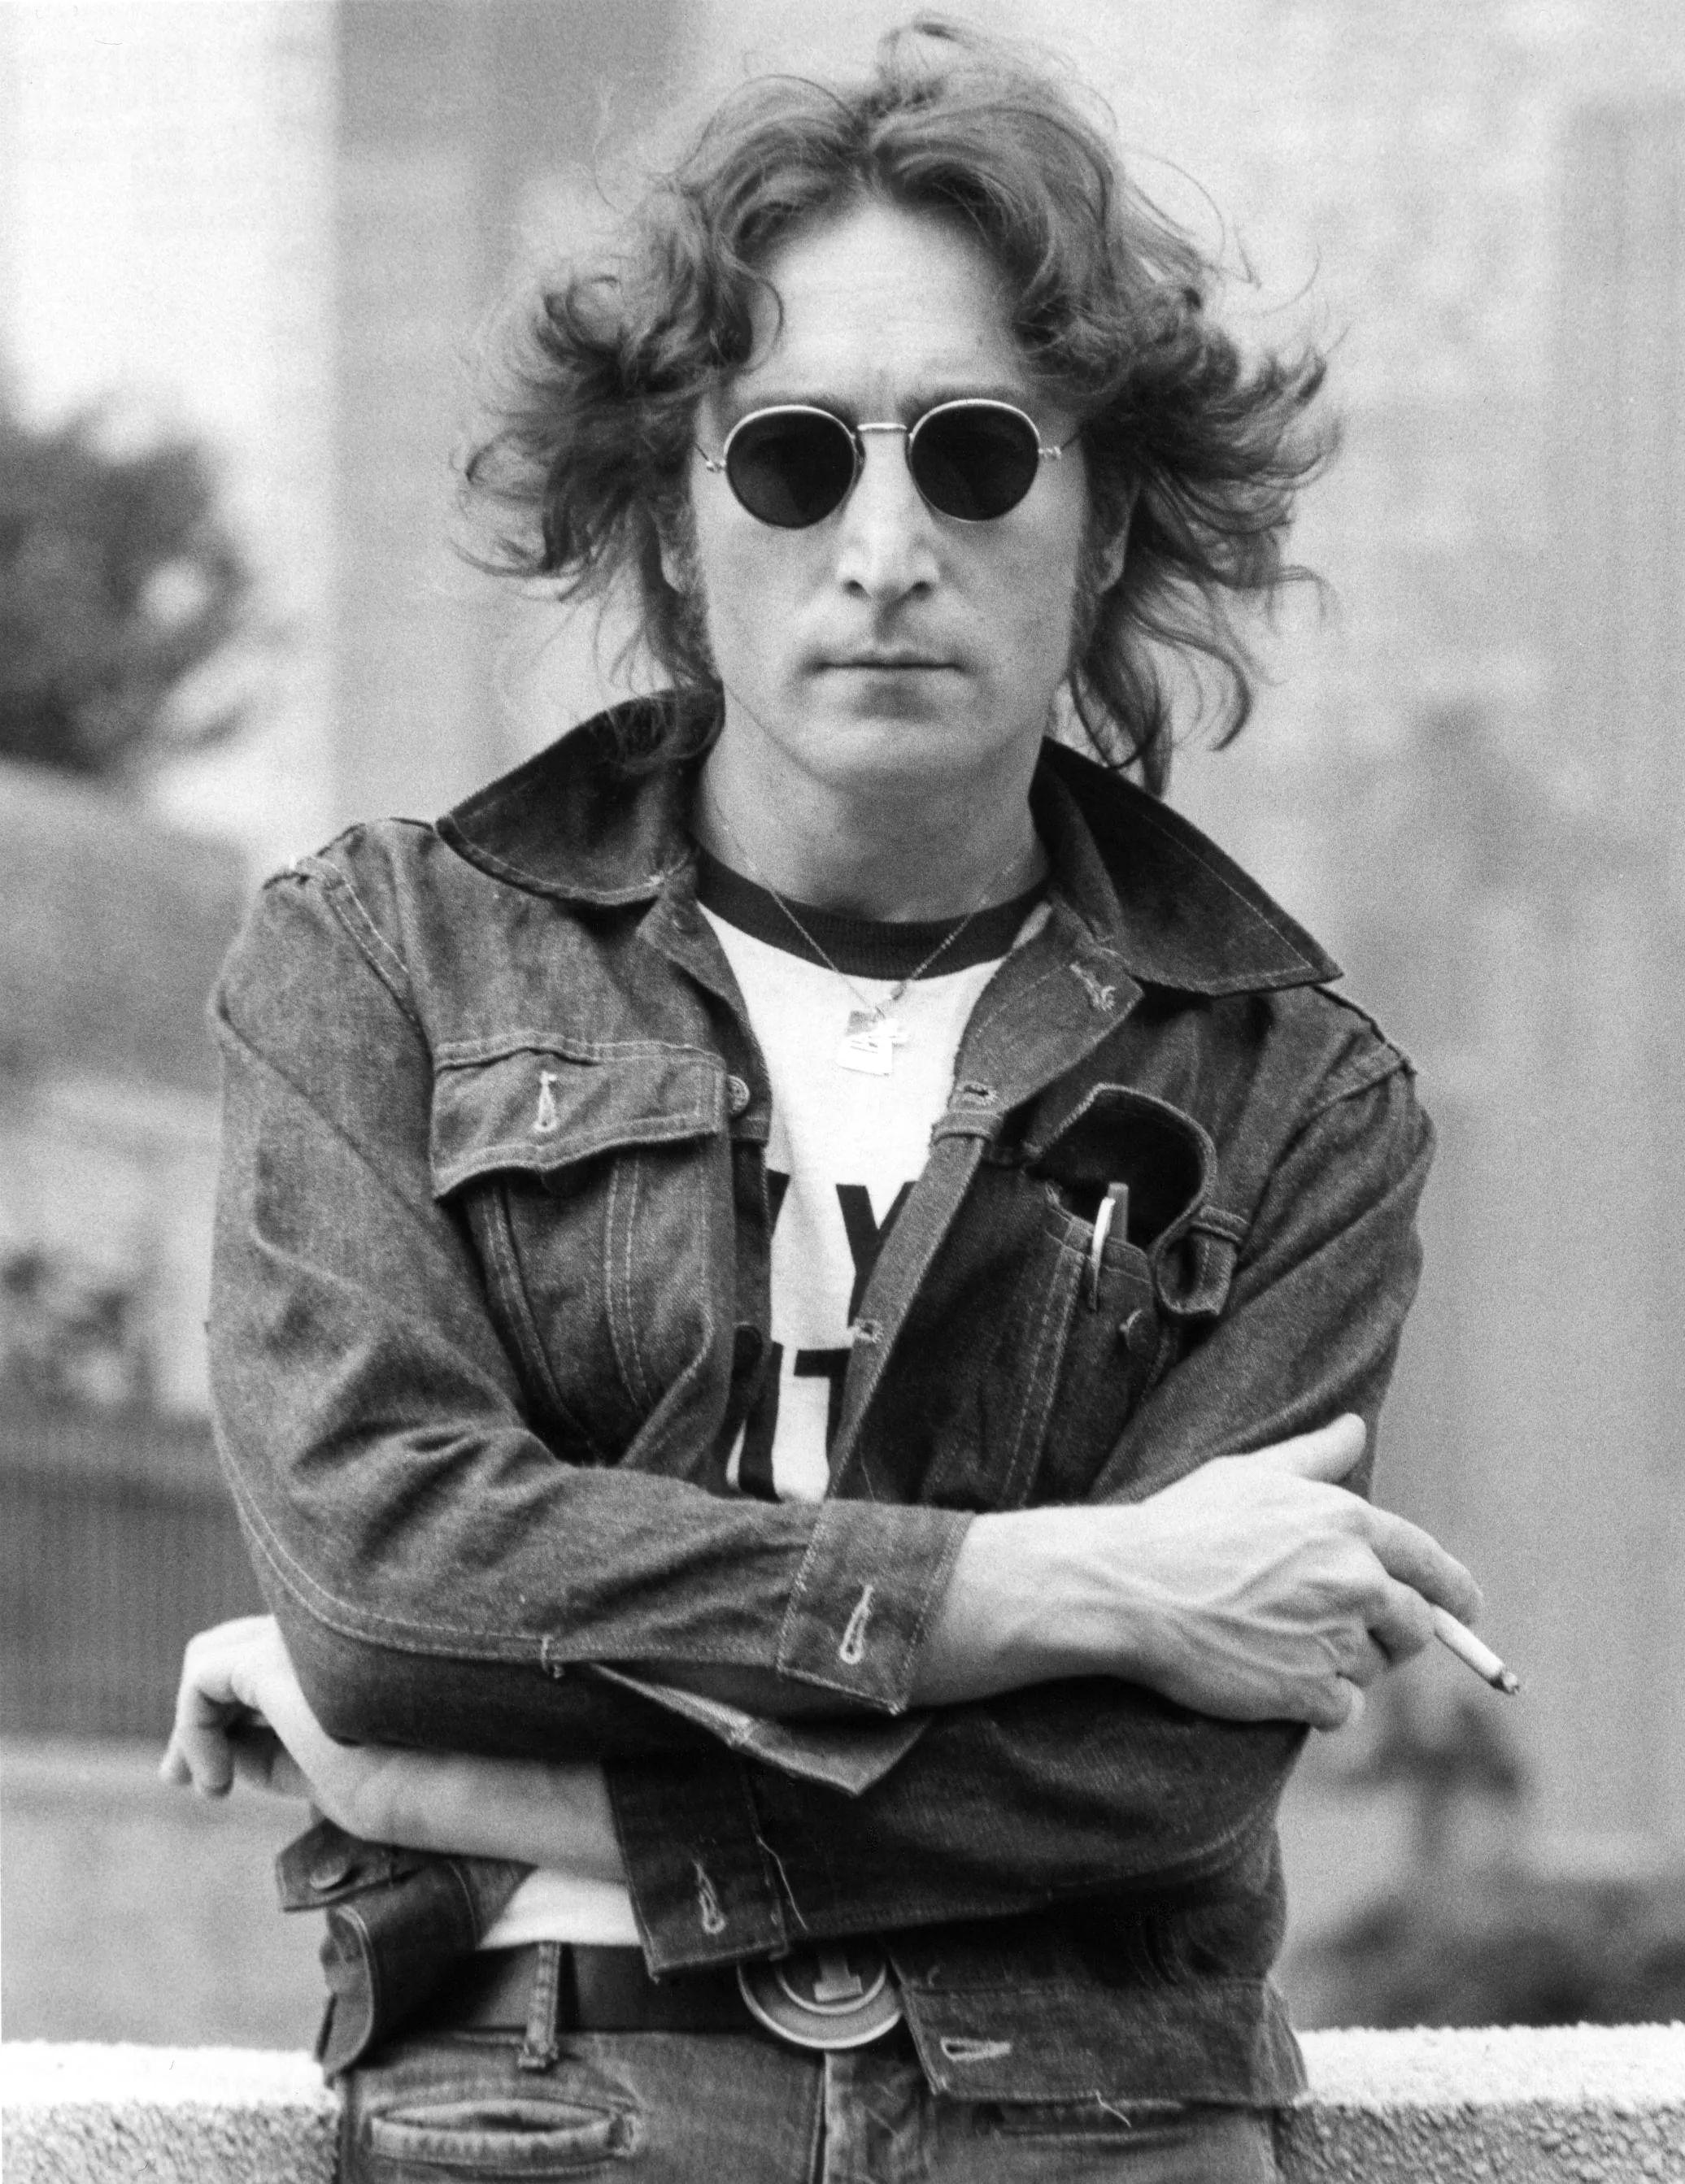 John Lennon: "Det är tortyr varje gång"